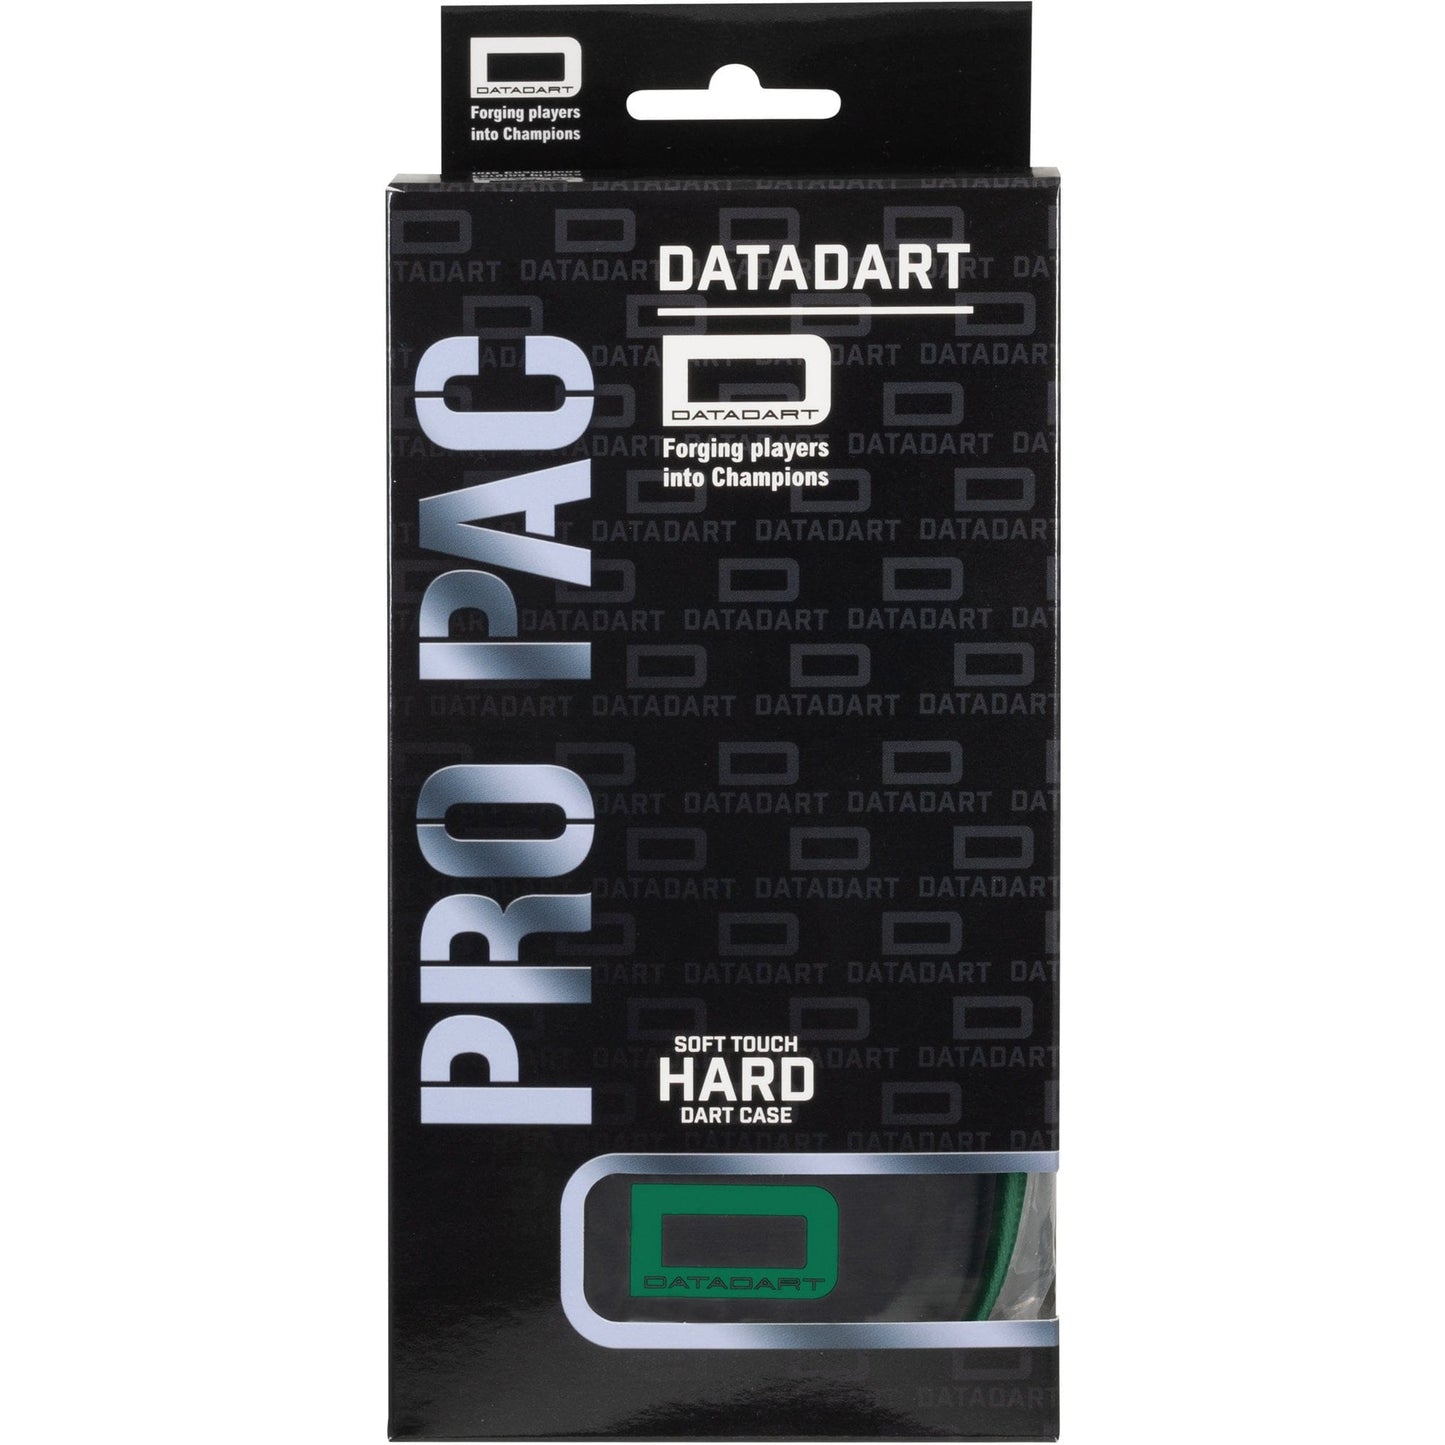 Datadart ProPac Dart Case - Strong EVA Case